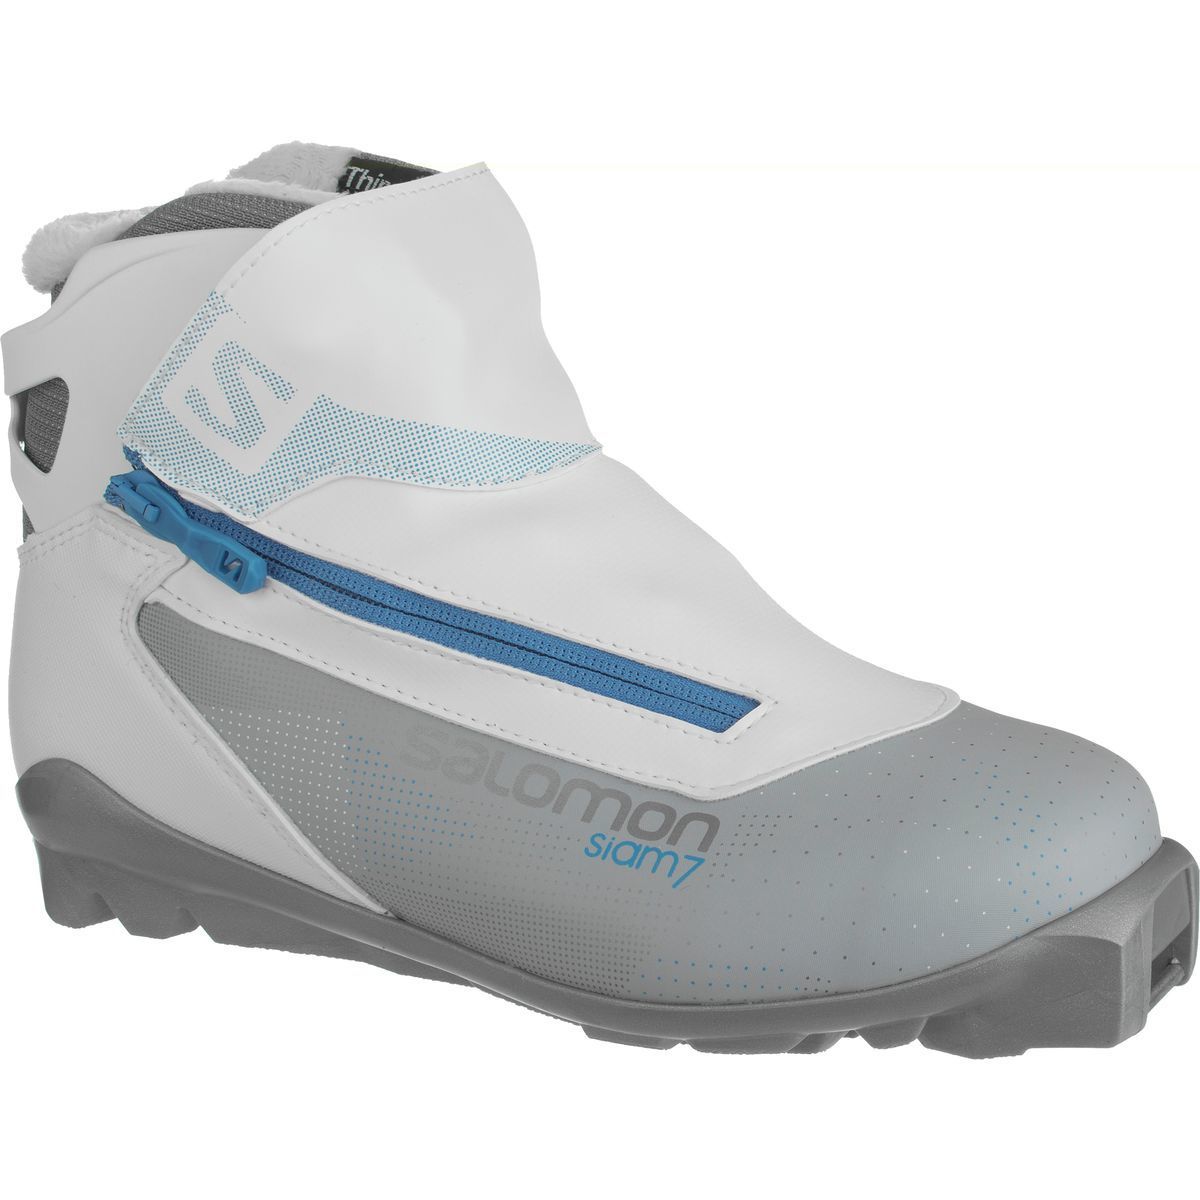 Salomon Siam 7 SNS Touring Boot - Ski